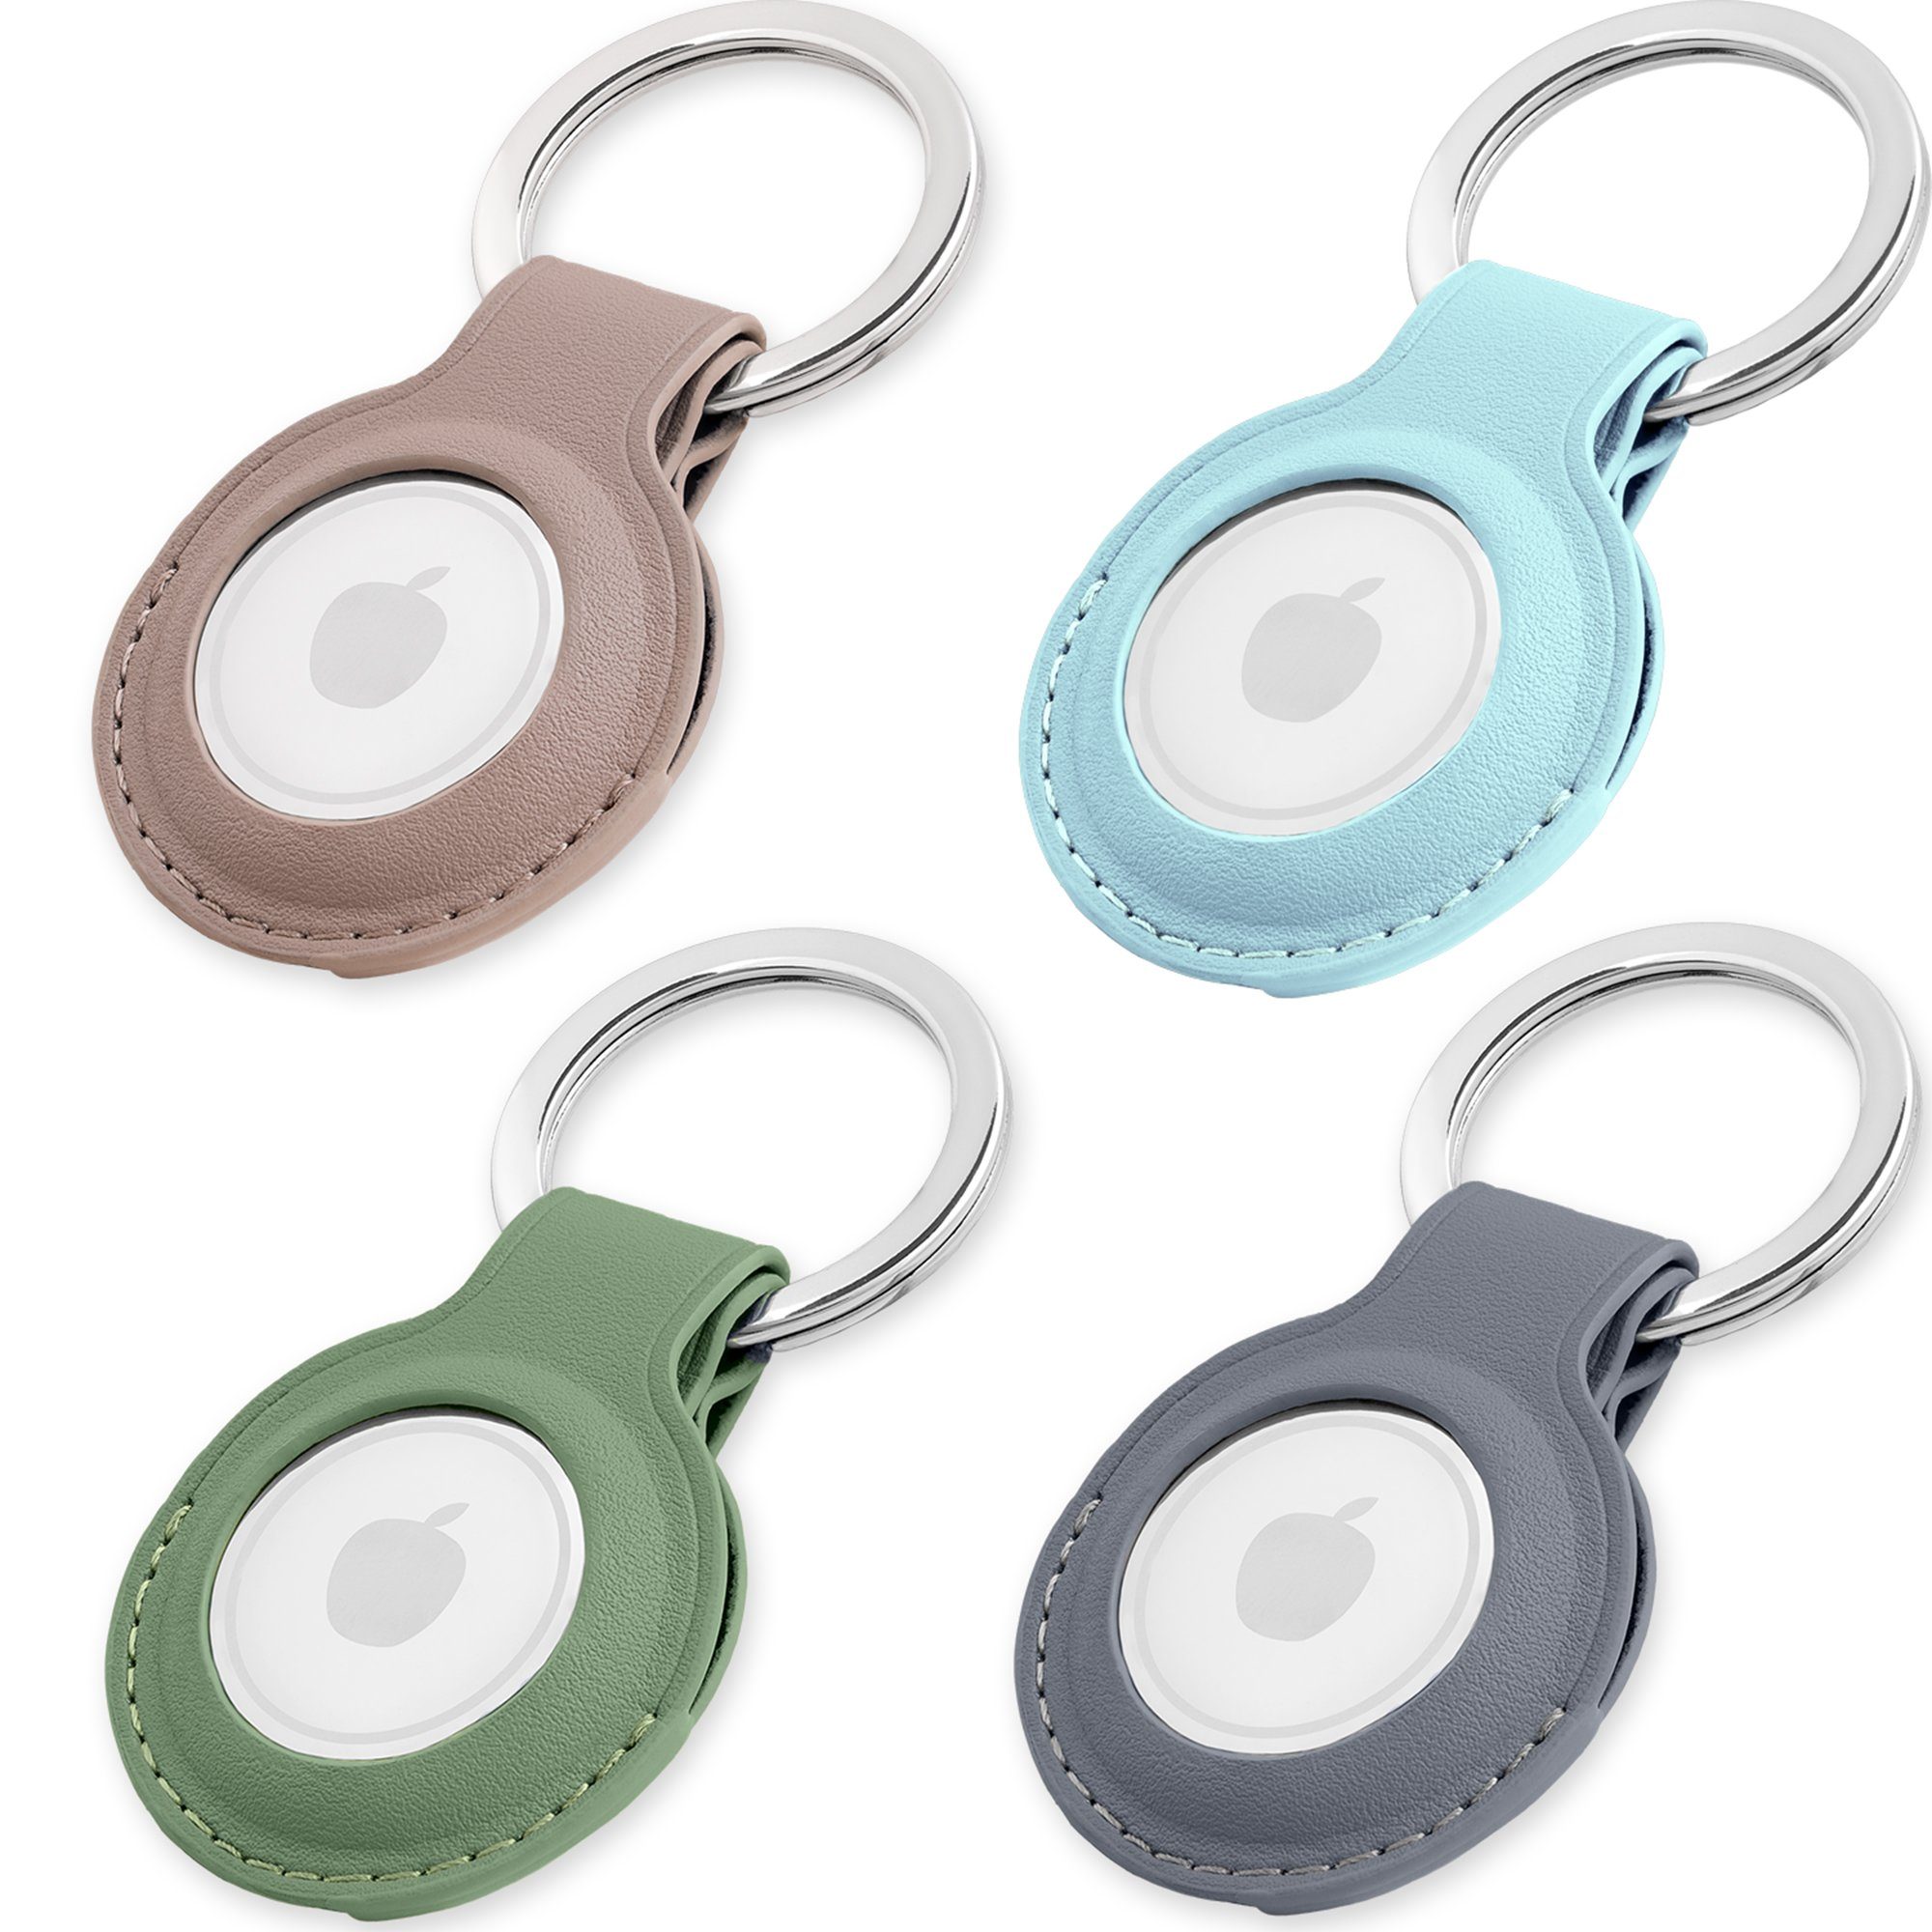 MAGATI Schlüsselanhänger Hülle kompatibel mit Apple Airtag Anhänger (Set, 4-tlg., Premiumleder Anhänger mit Edelstahl Schlüsselring für Apple AirTag), Komplett schützendes Zubehör, Grün+Taupe+Hellblau+Grau